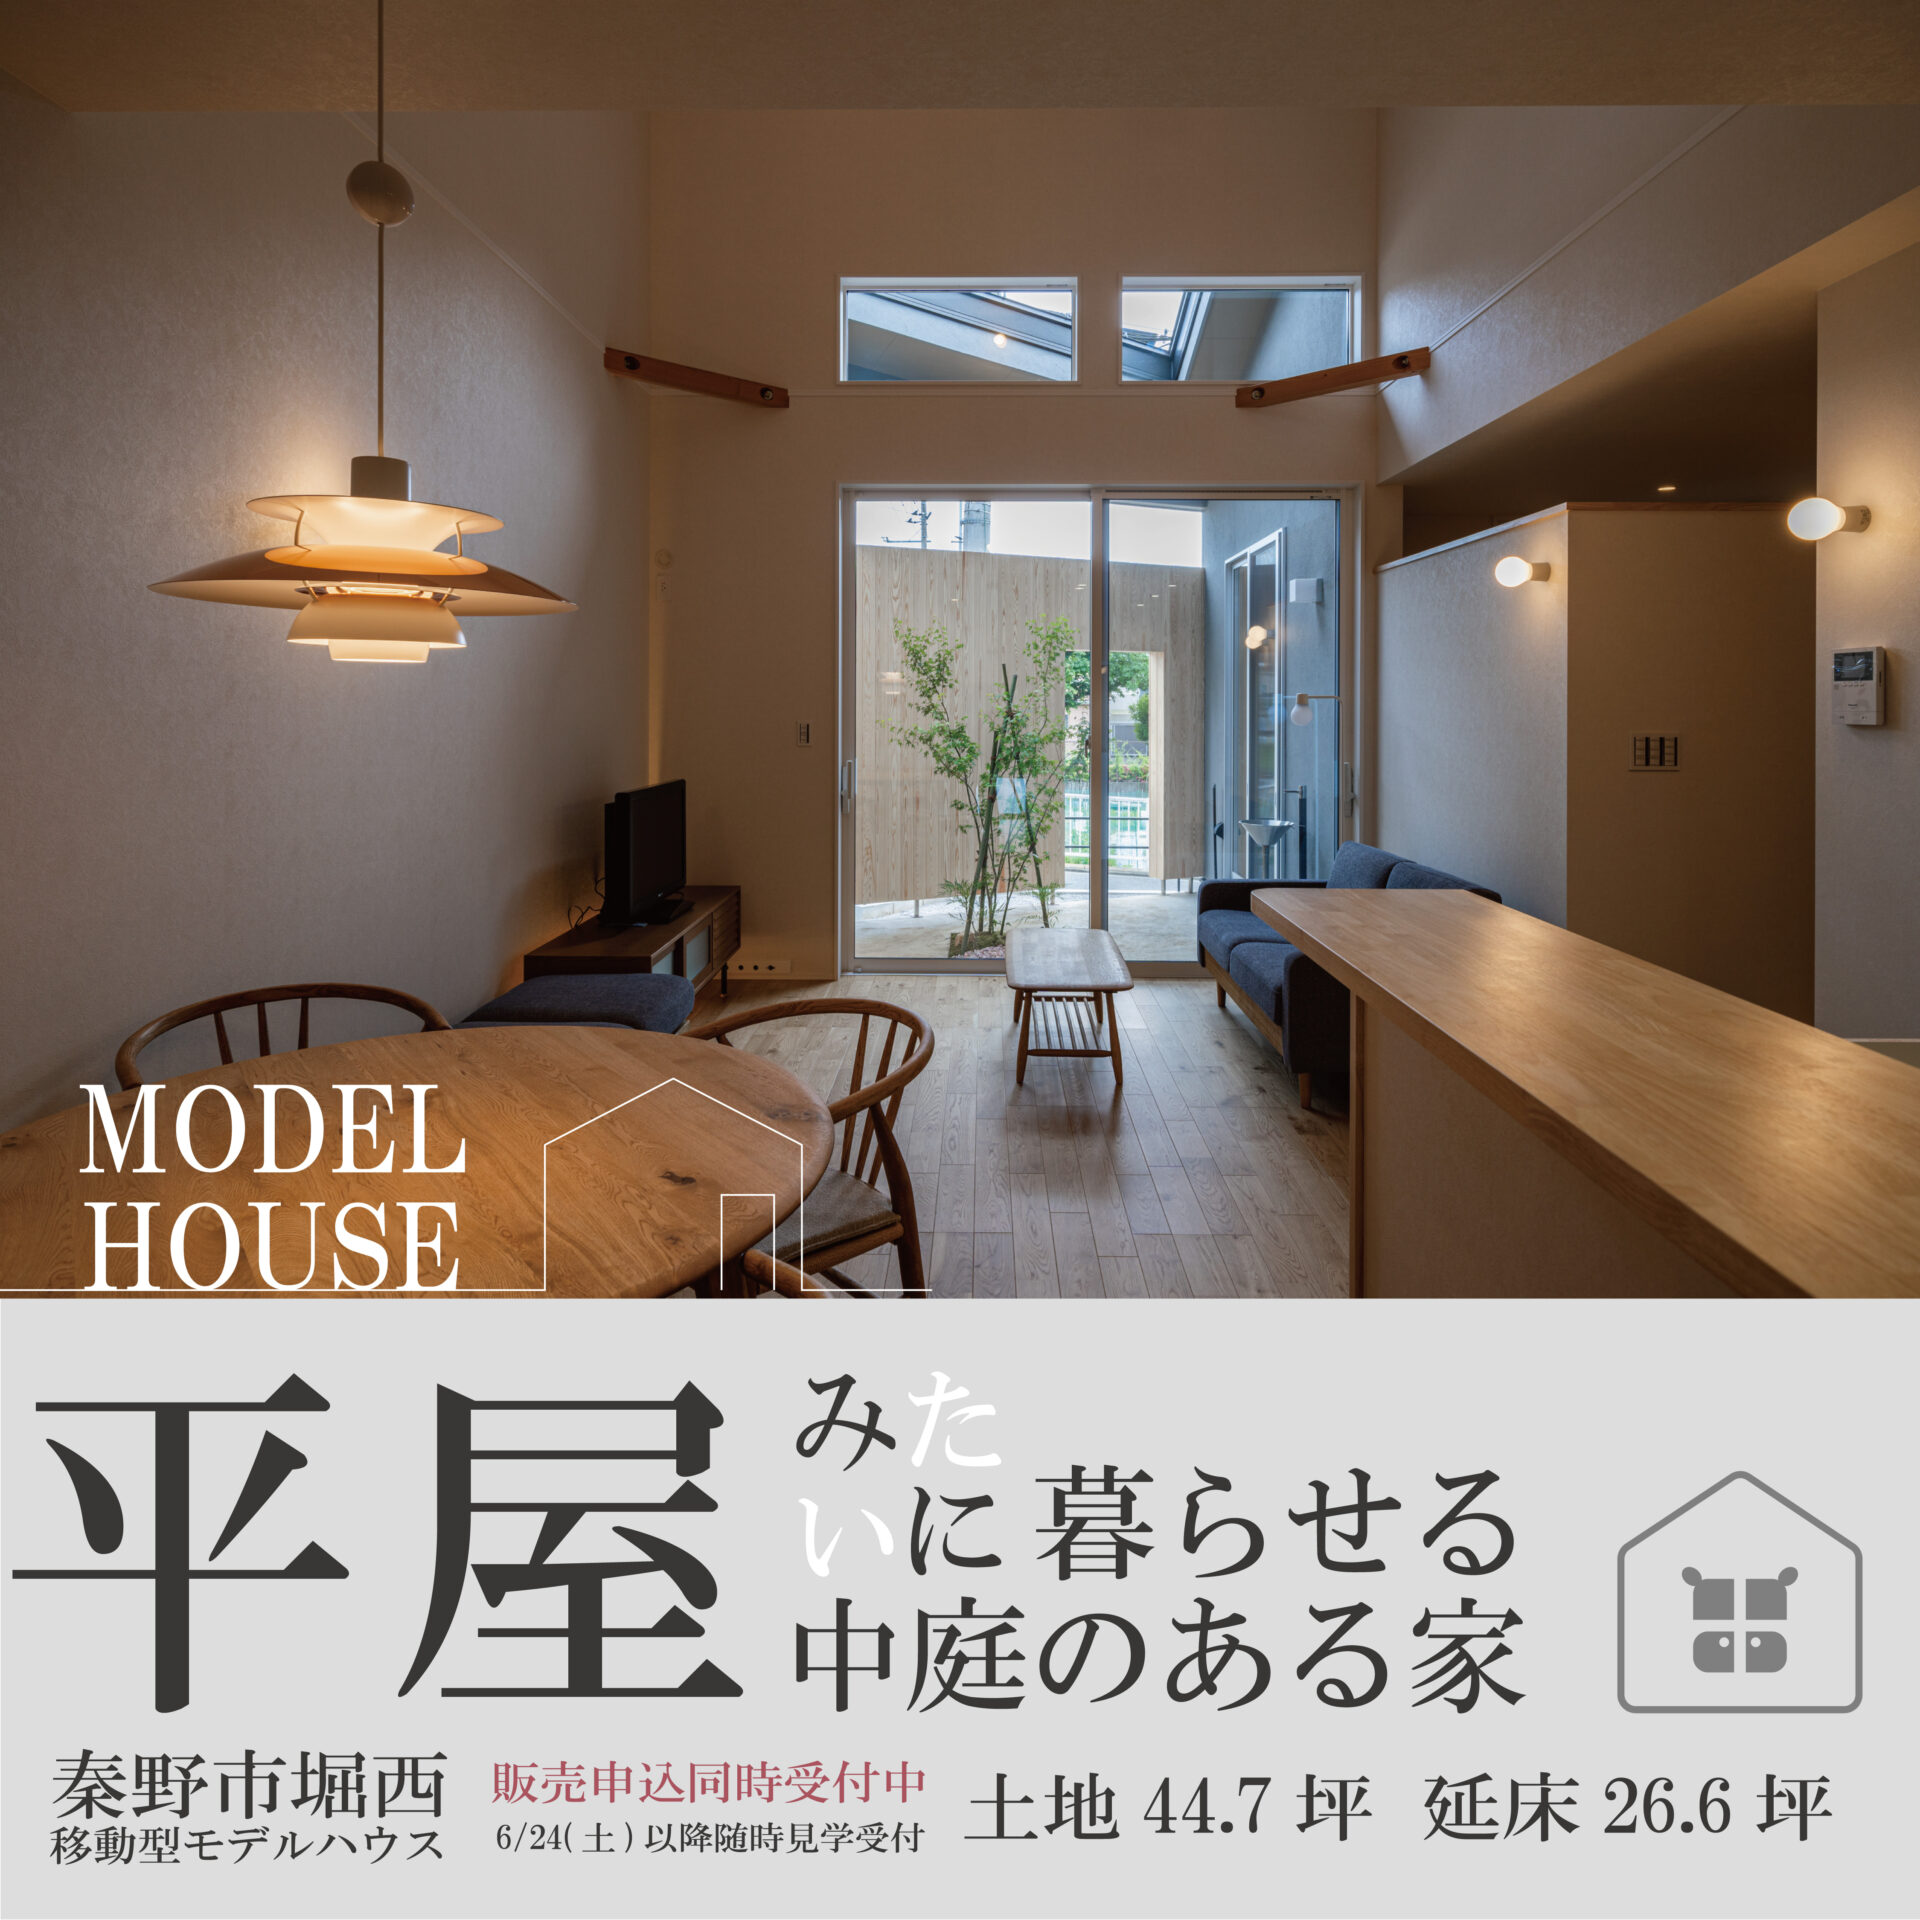 【平屋×二階建て/WBHOUSE】26坪 平屋みたいに暮らせる家 | モデルハウス